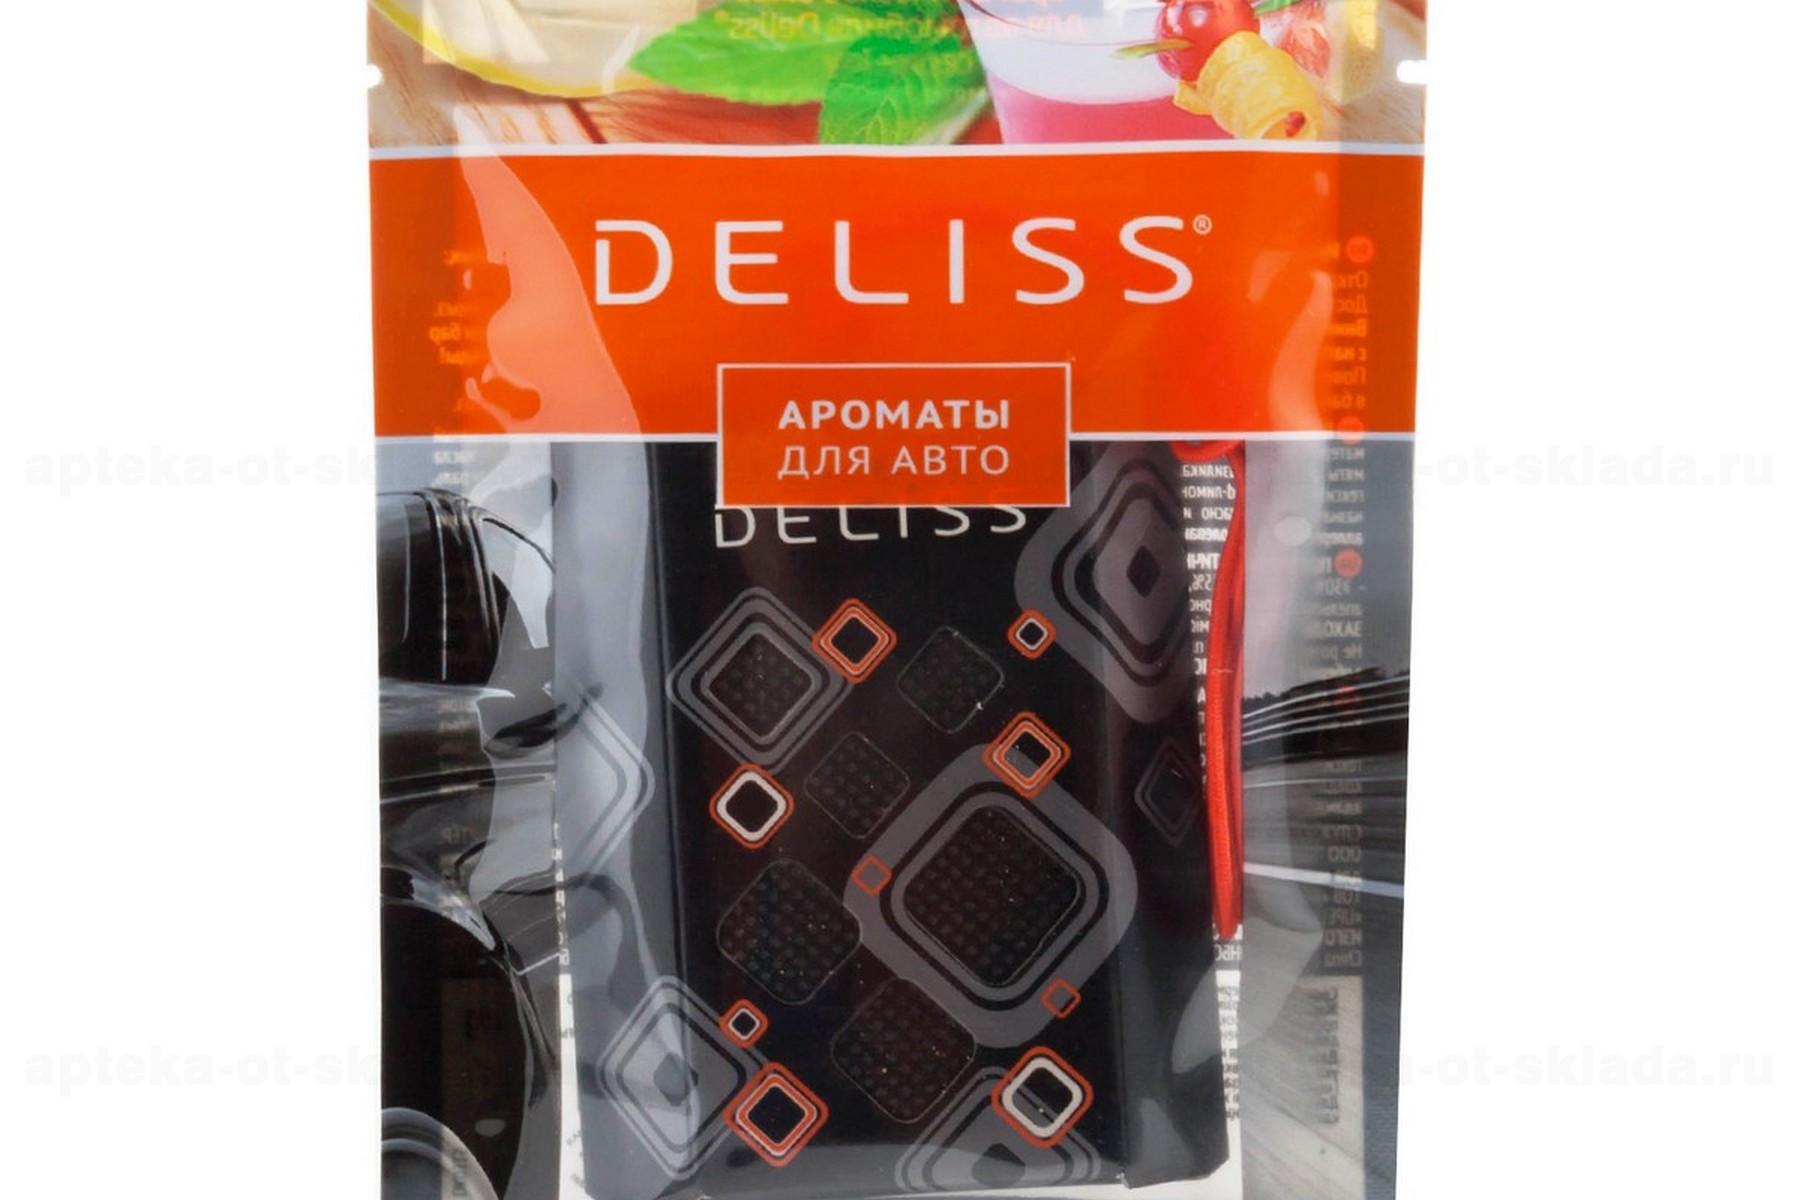 Deliss подвесное ароматическое саше для автомобиля аромат дыня/мята/тропические фрукты 7,8г